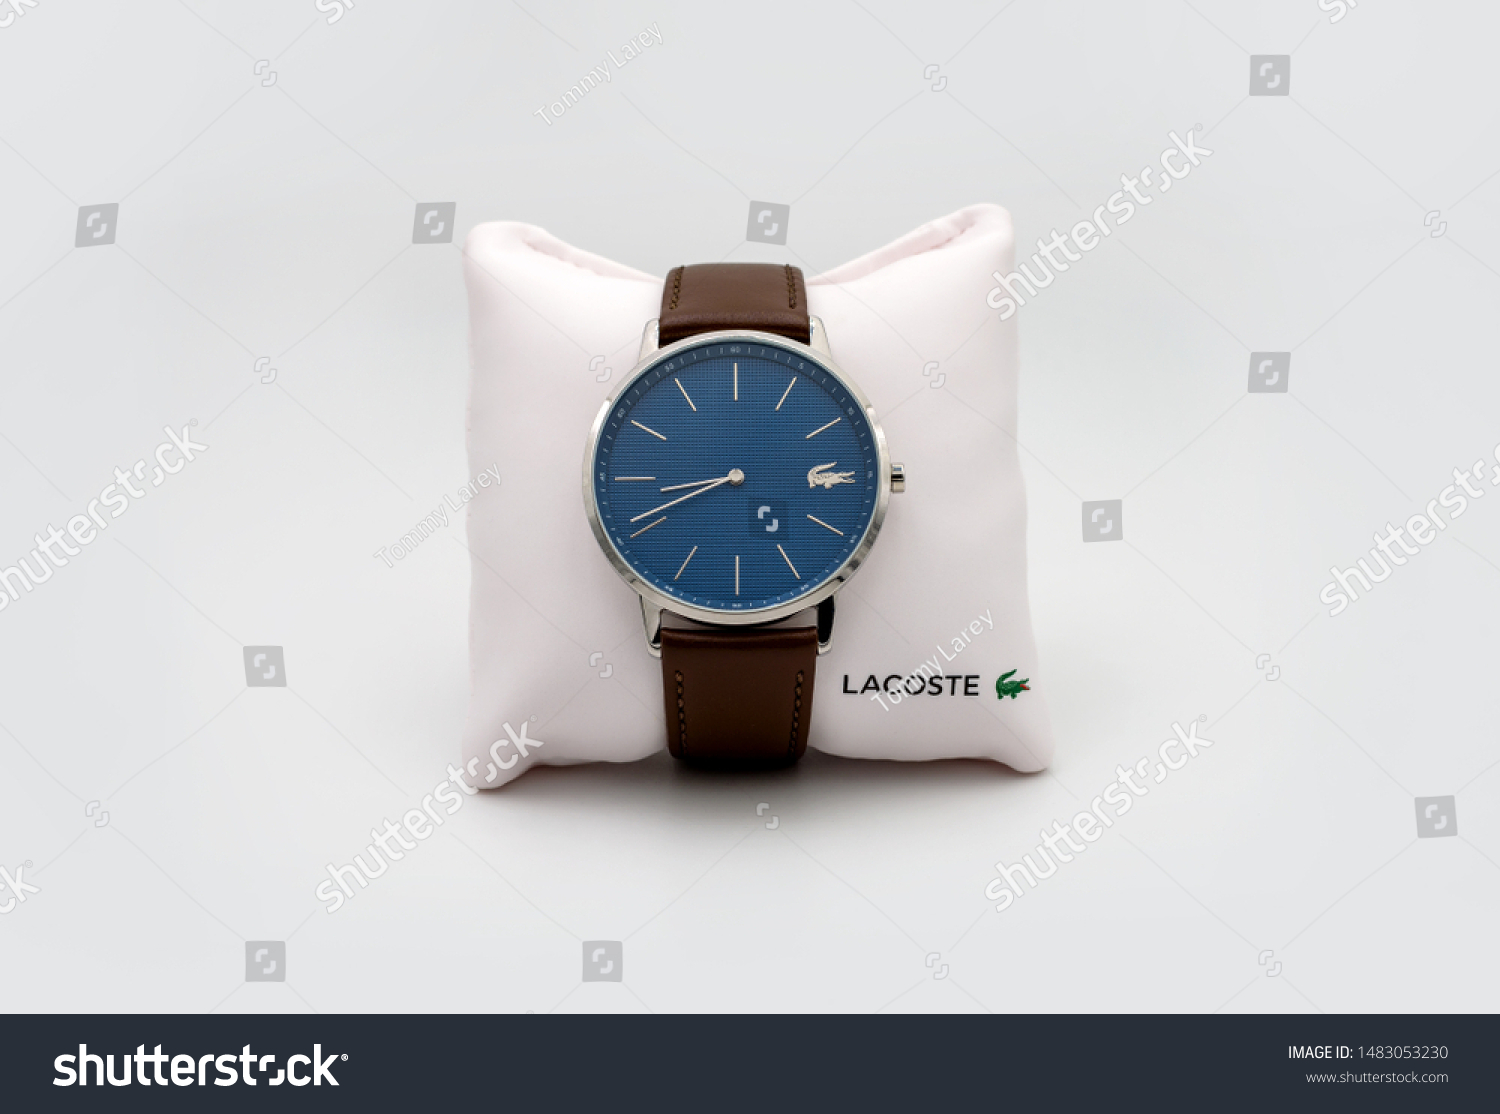 lacoste watch 2019